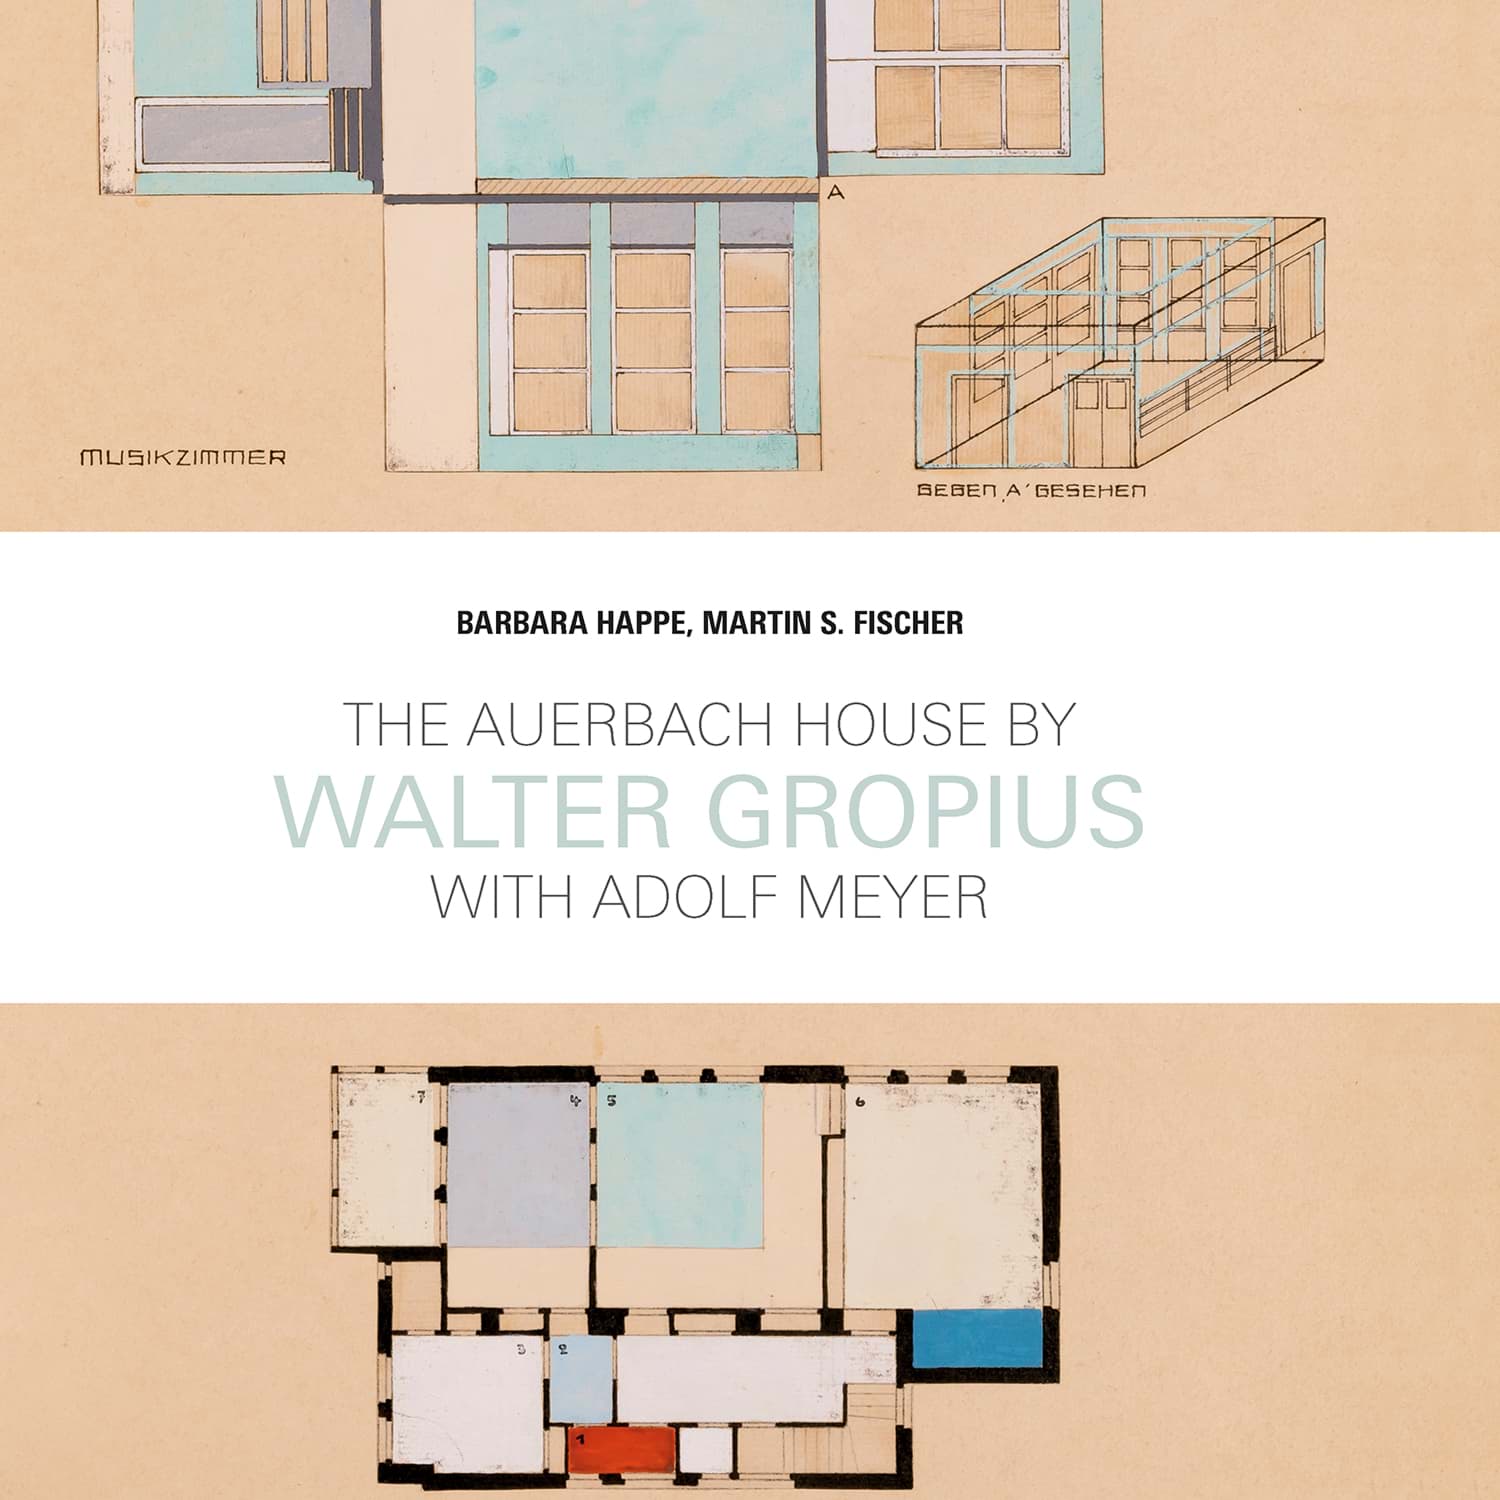 ヴァルター・グロピウスとアドルフ・マイヤーのハウス・アウアーバッハの画像